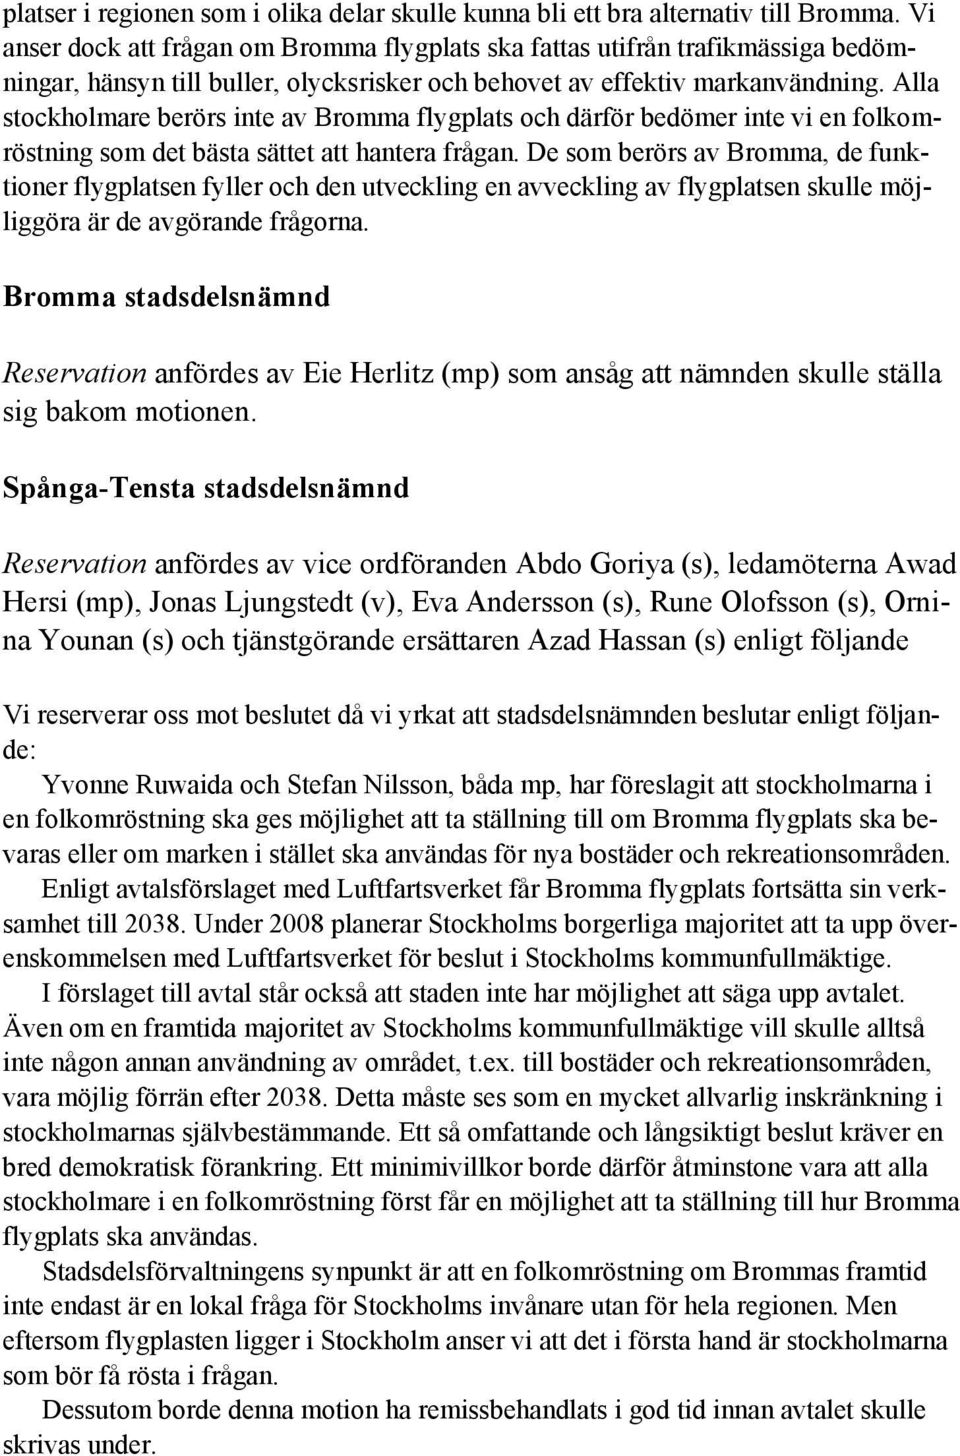 Alla stockholmare berörs inte av Bromma flygplats och därför bedömer inte vi en folkomröstning som det bästa sättet att hantera frågan.